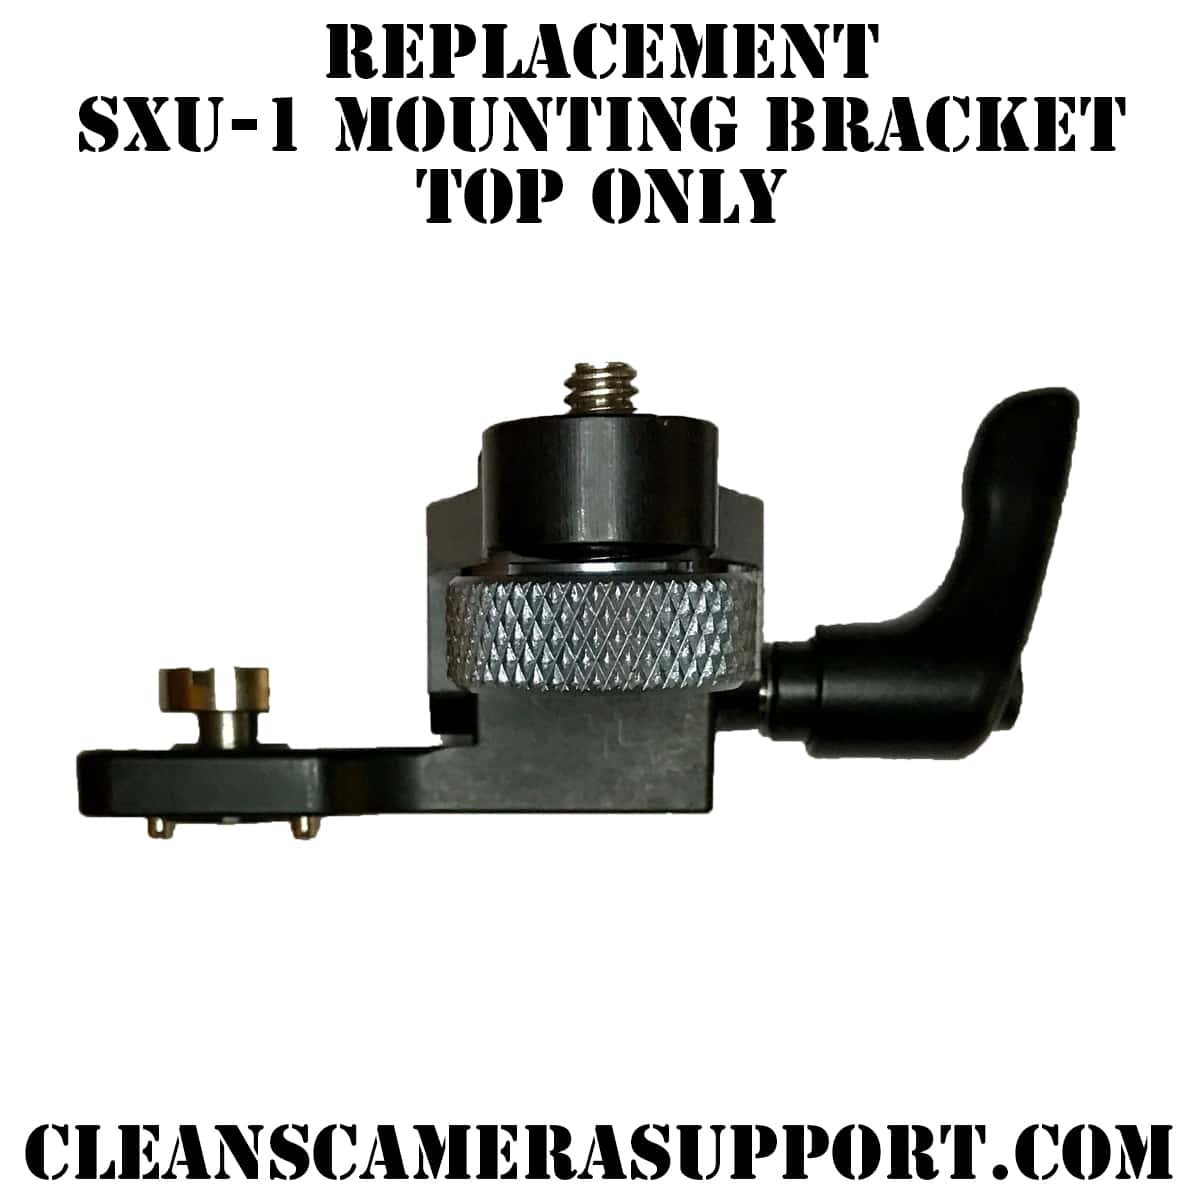 arri sxu-1 replacement top bracket